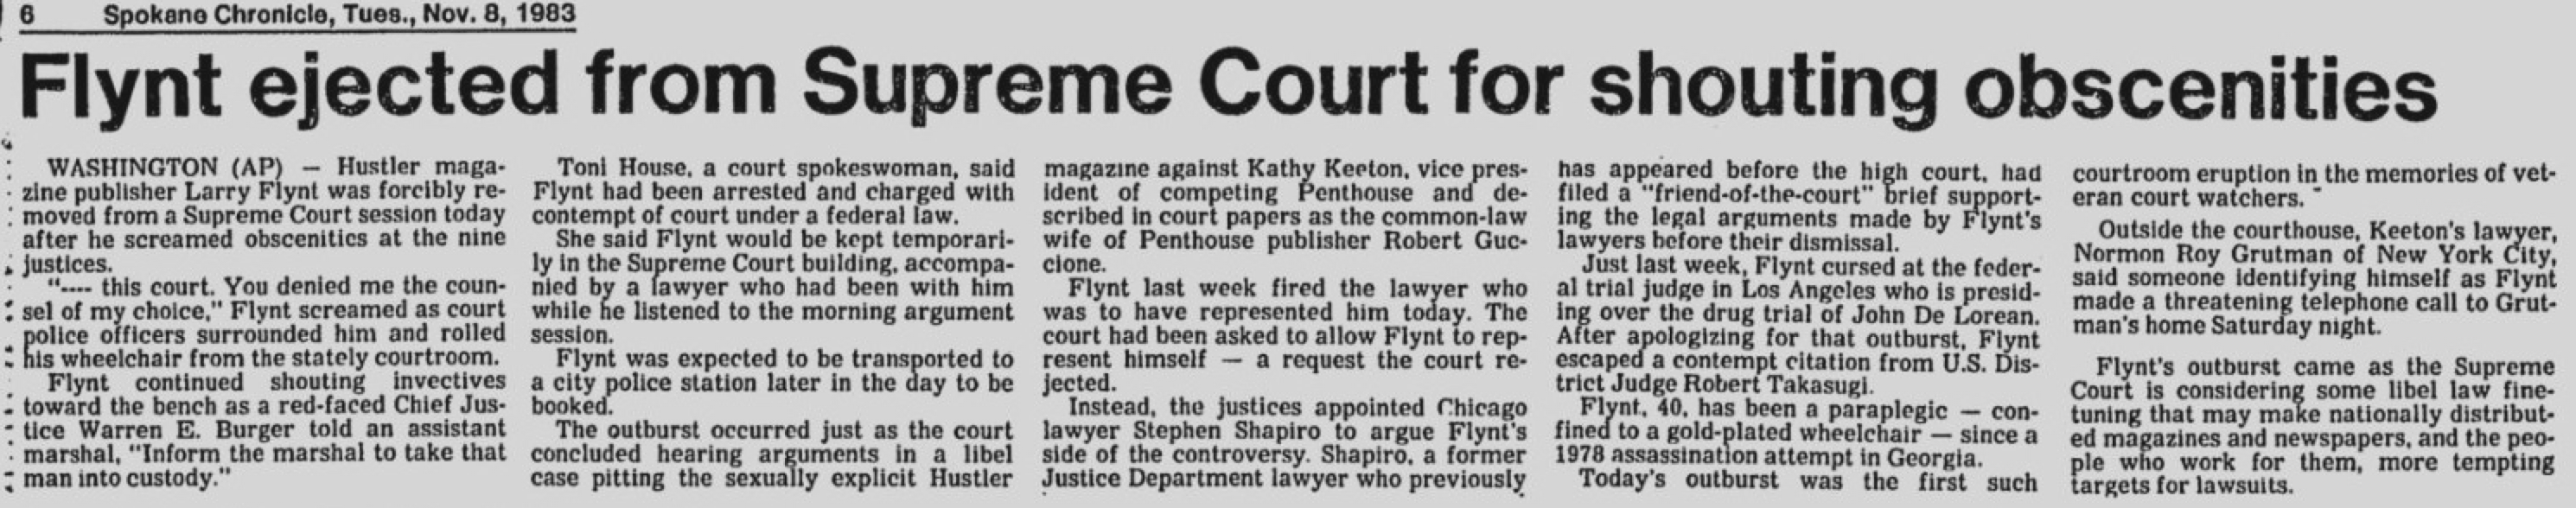 Spokane Chronicle November 1983